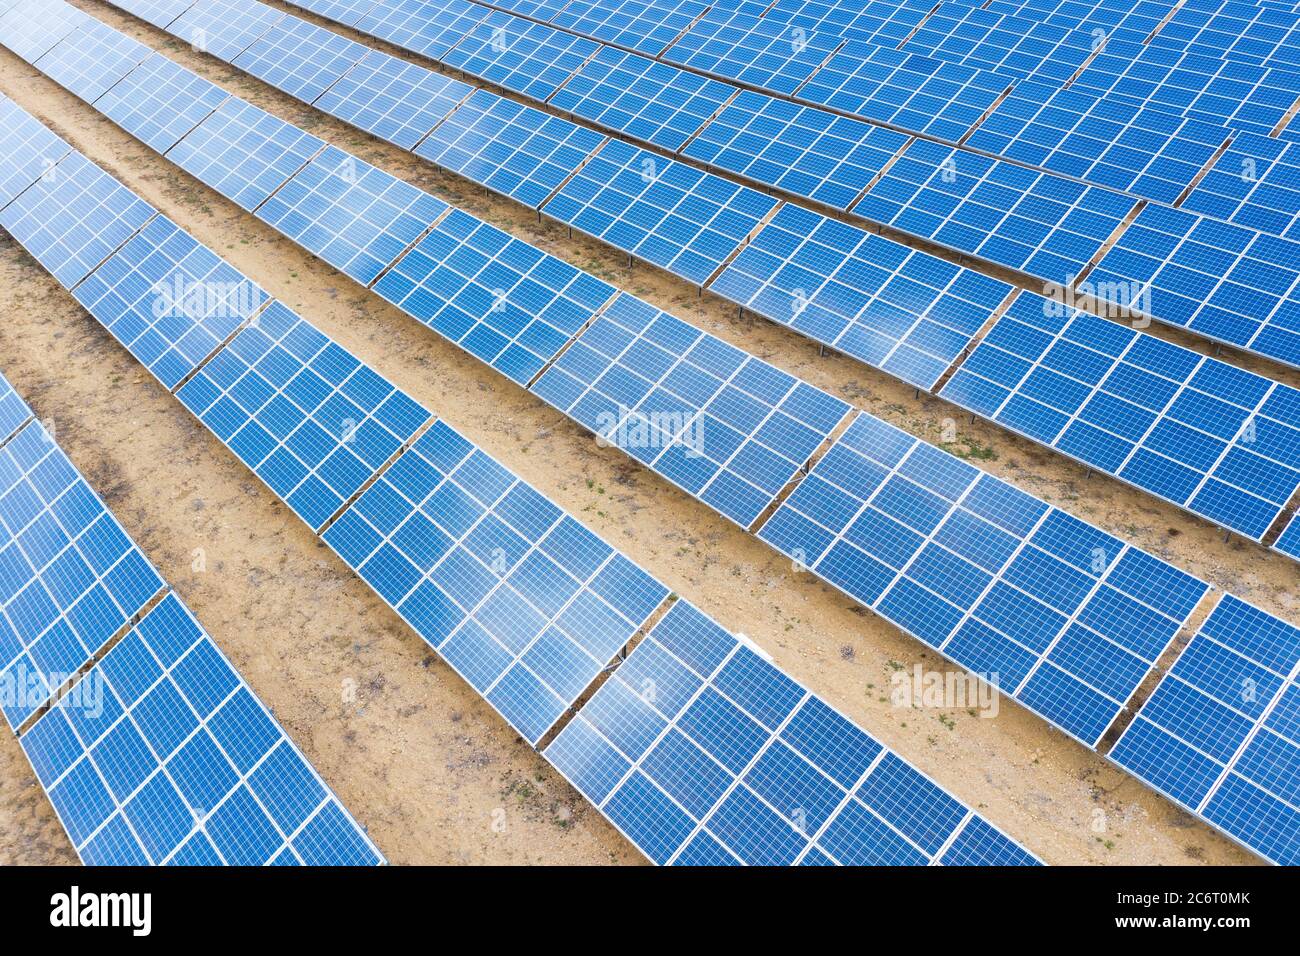 Vue aérienne en haut des panneaux d'énergie solaire. Concept d'énergie propre et renouvelable pour un écosystème durable. Photo de haute qualité. Banque D'Images